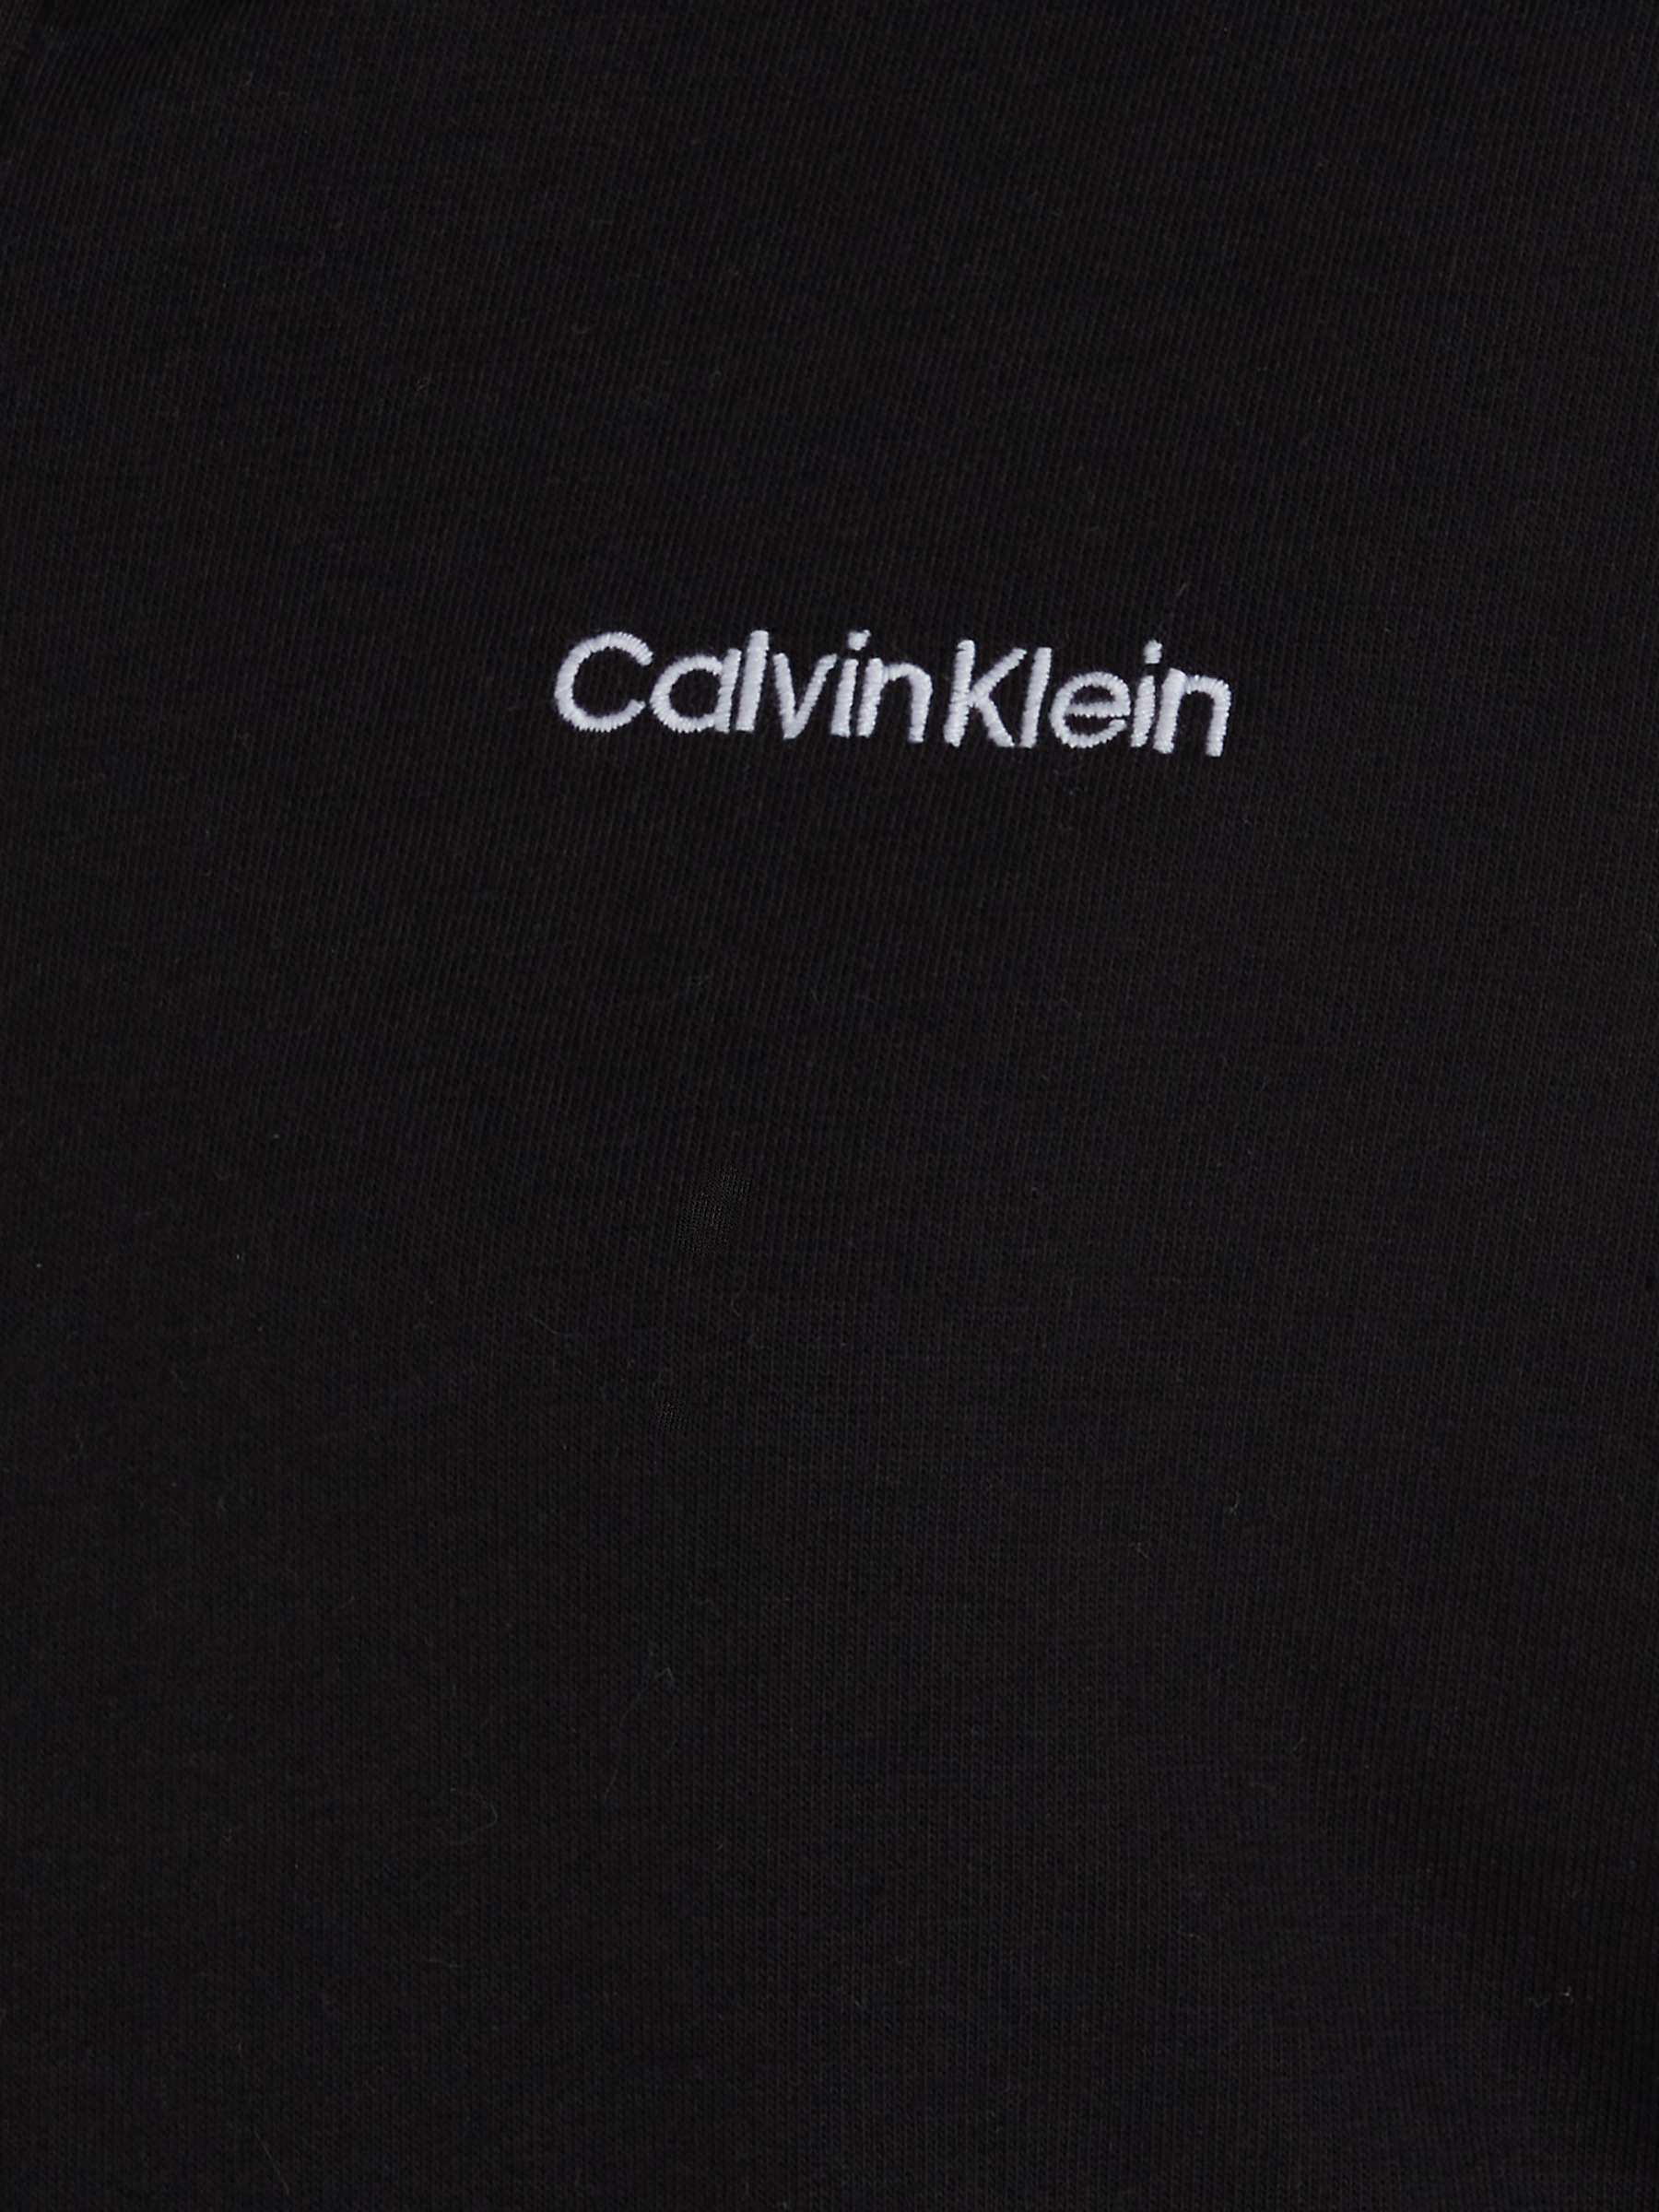 Buy Calvin Klein Lounge Zip Up Hoodie Online at johnlewis.com